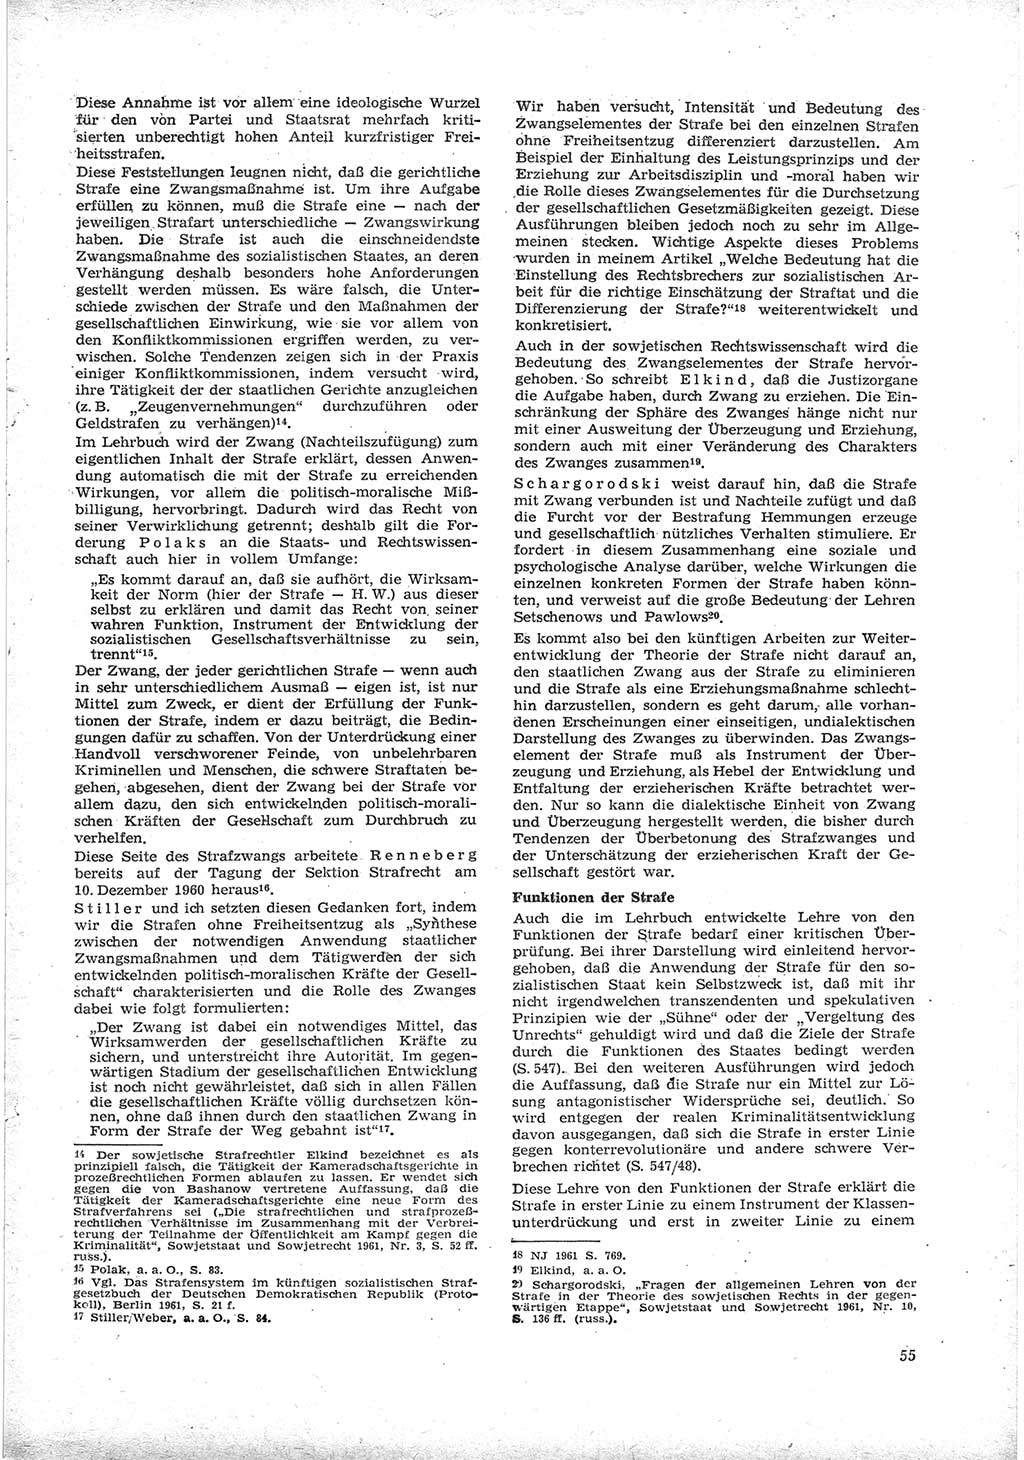 Neue Justiz (NJ), Zeitschrift für Recht und Rechtswissenschaft [Deutsche Demokratische Republik (DDR)], 17. Jahrgang 1963, Seite 55 (NJ DDR 1963, S. 55)